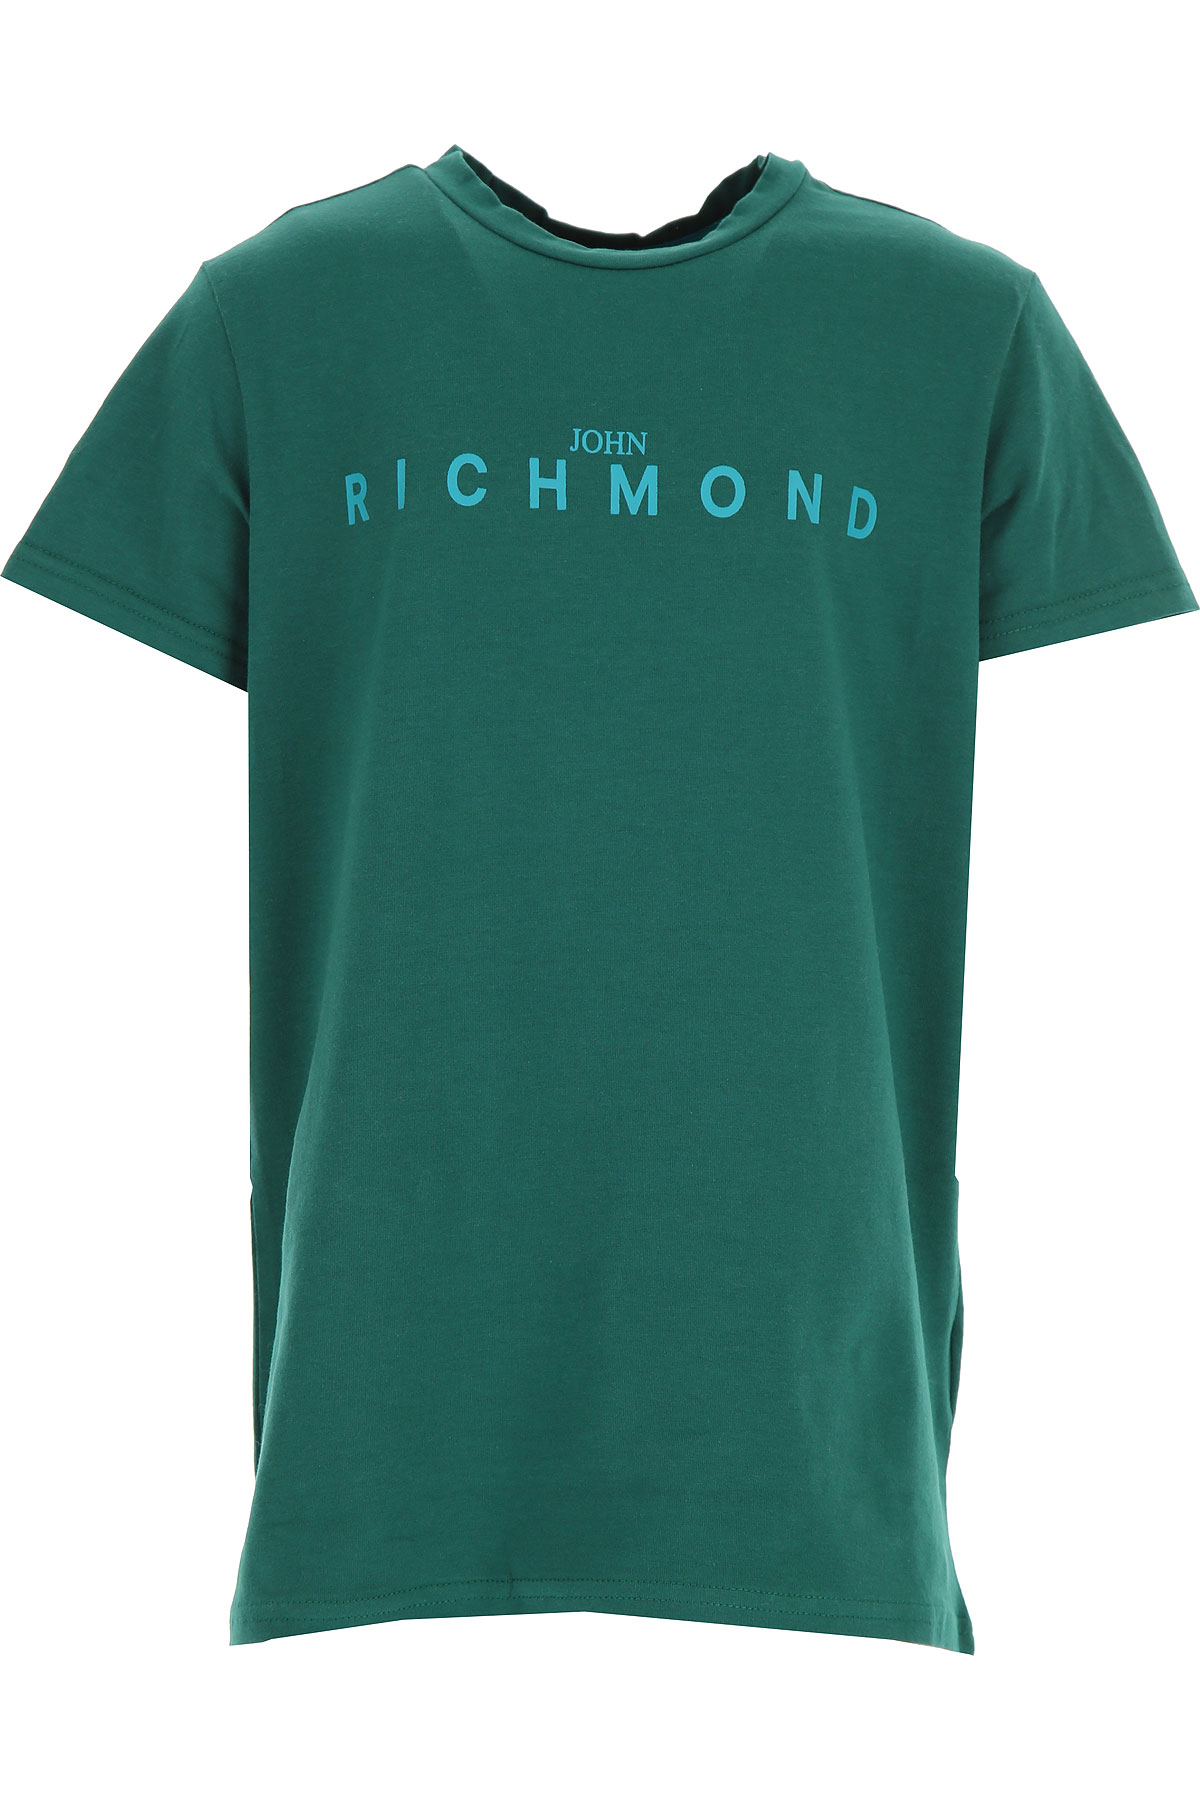 Richmond Kinder T-Shirt für Jungen Günstig im Sale, Dunkelgrün, Baumwolle, 2017, 10Y 14Y 16Y 4Y 6Y